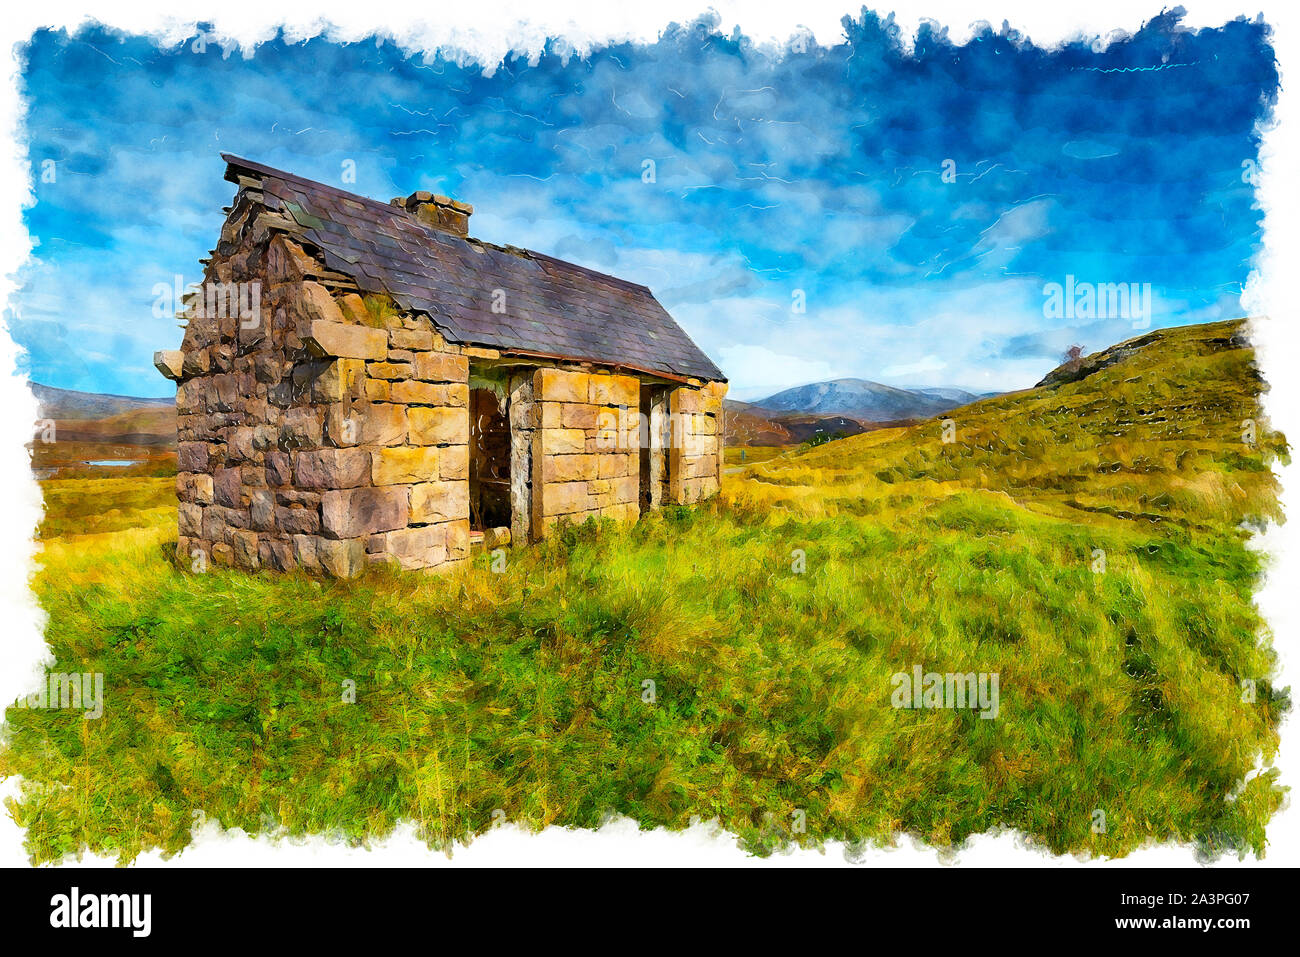 L'aquarelle d'un vieux bothy à Elphin dans les Highlands d'Ecosse Banque D'Images